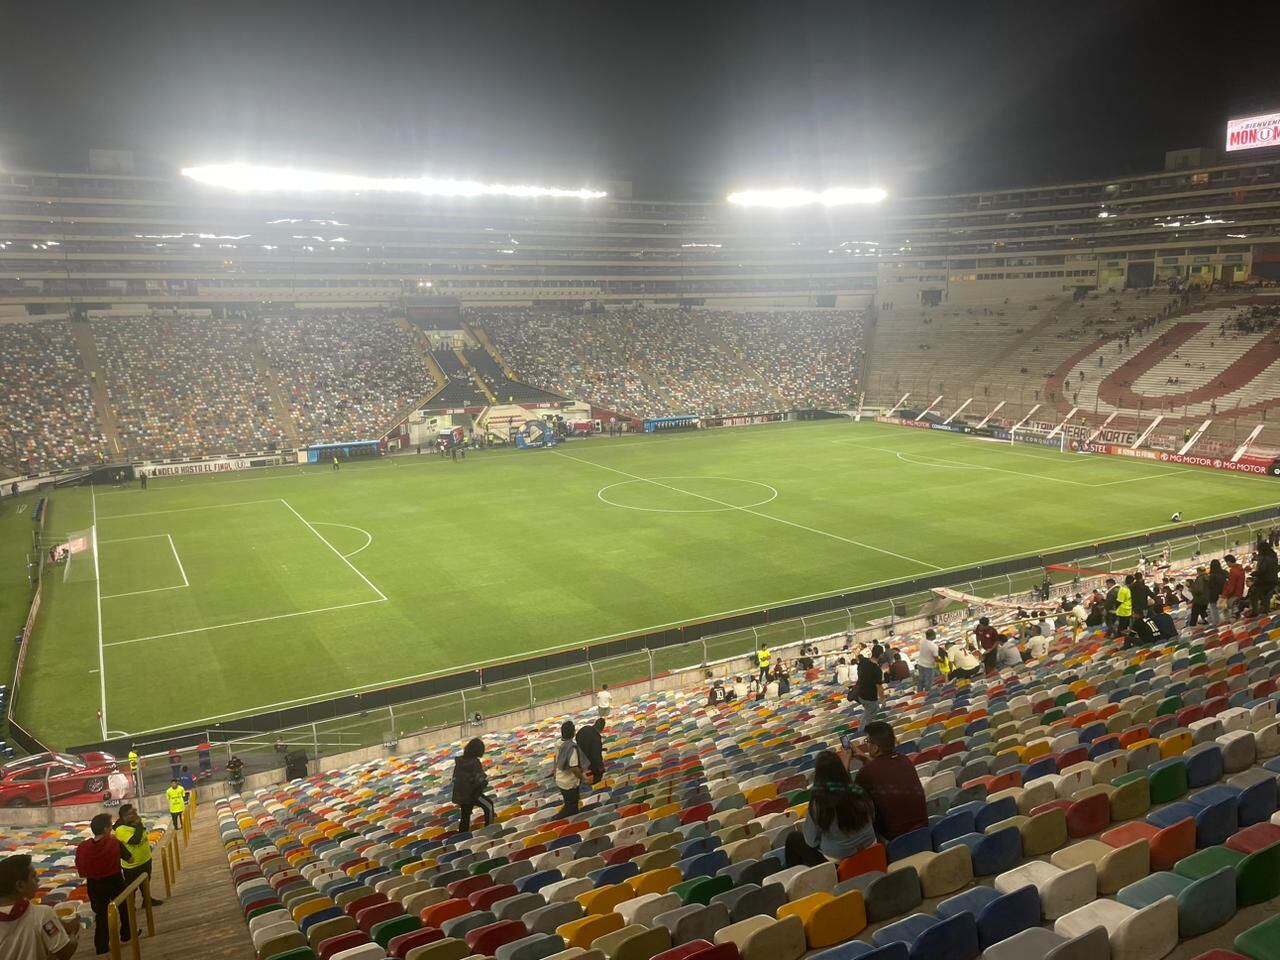 Instalaciones del estadio Monumental listas para recibir el Universitario vs Independiente Santa Fe. (Video: Luis Mario Pineda)